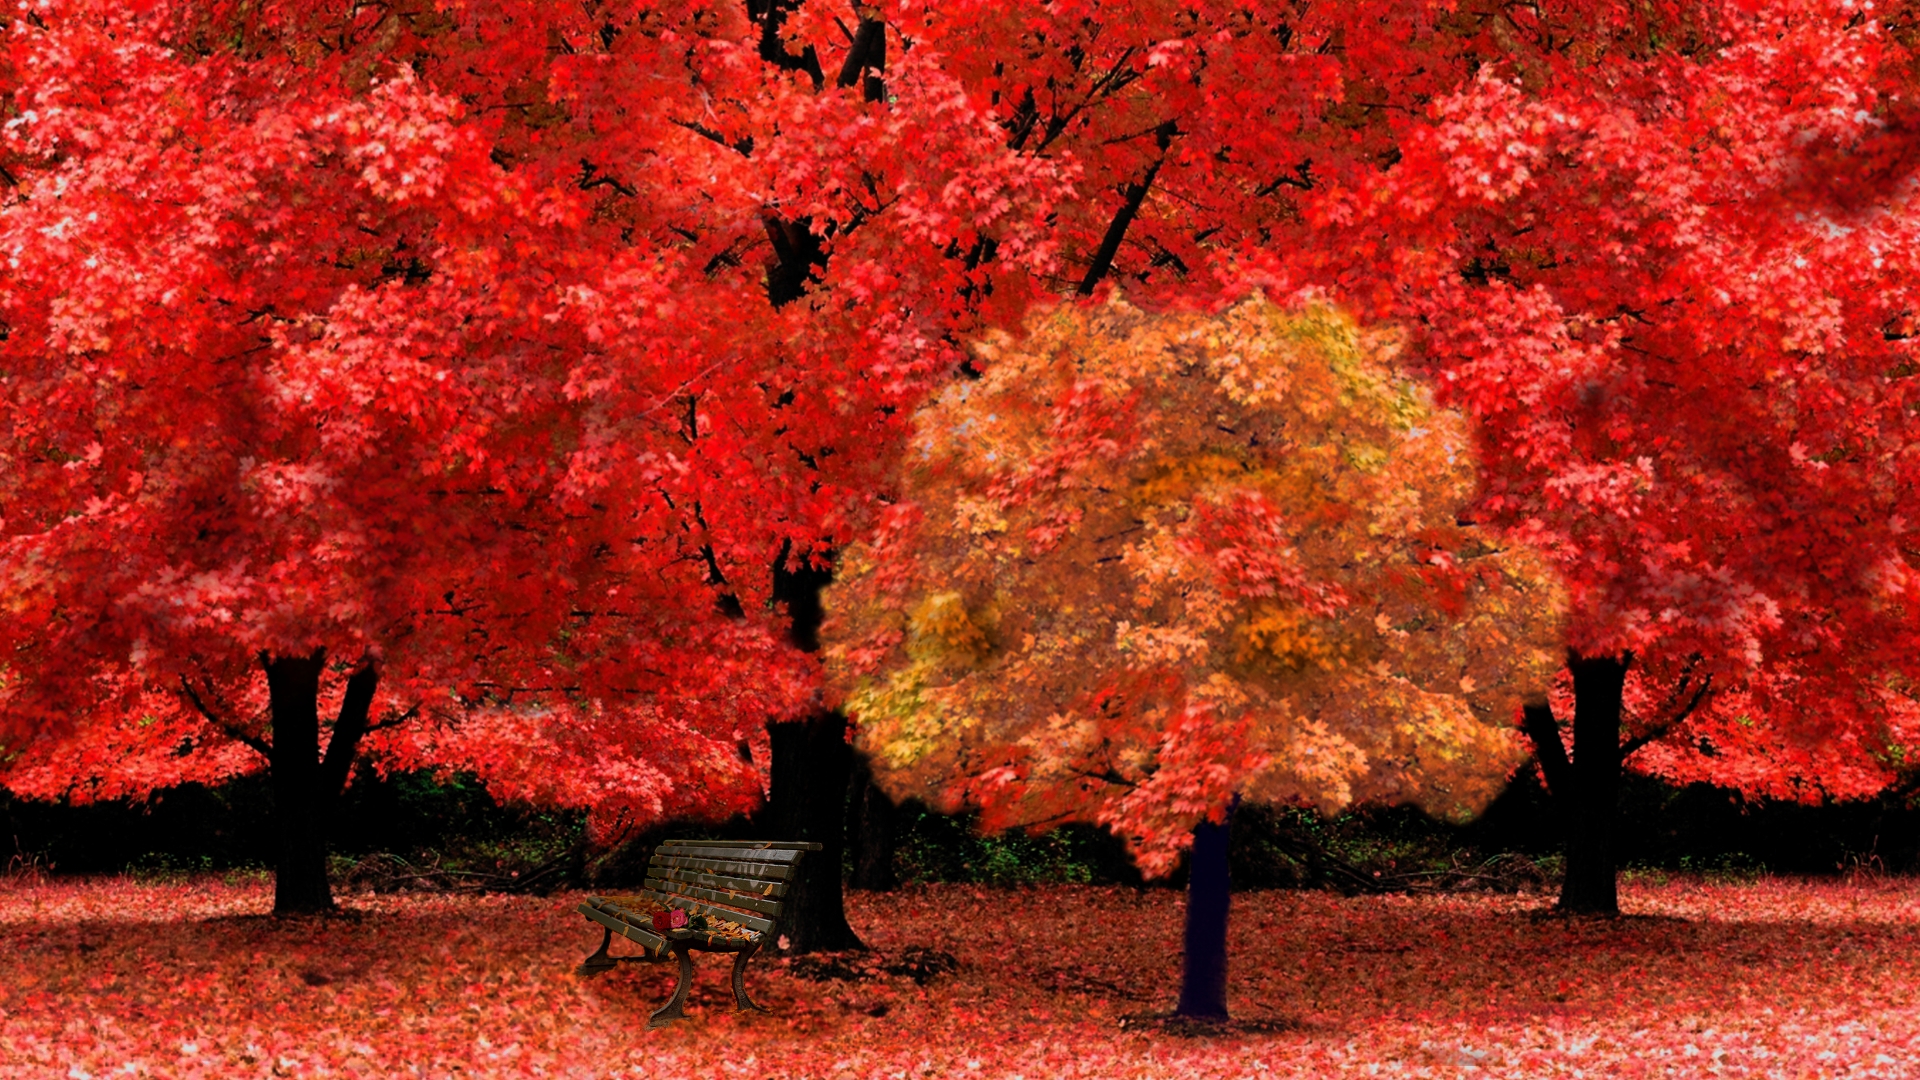 Autumn Yellow Park HD Picture Wallpaper Size 1920x1080 AmazingPict